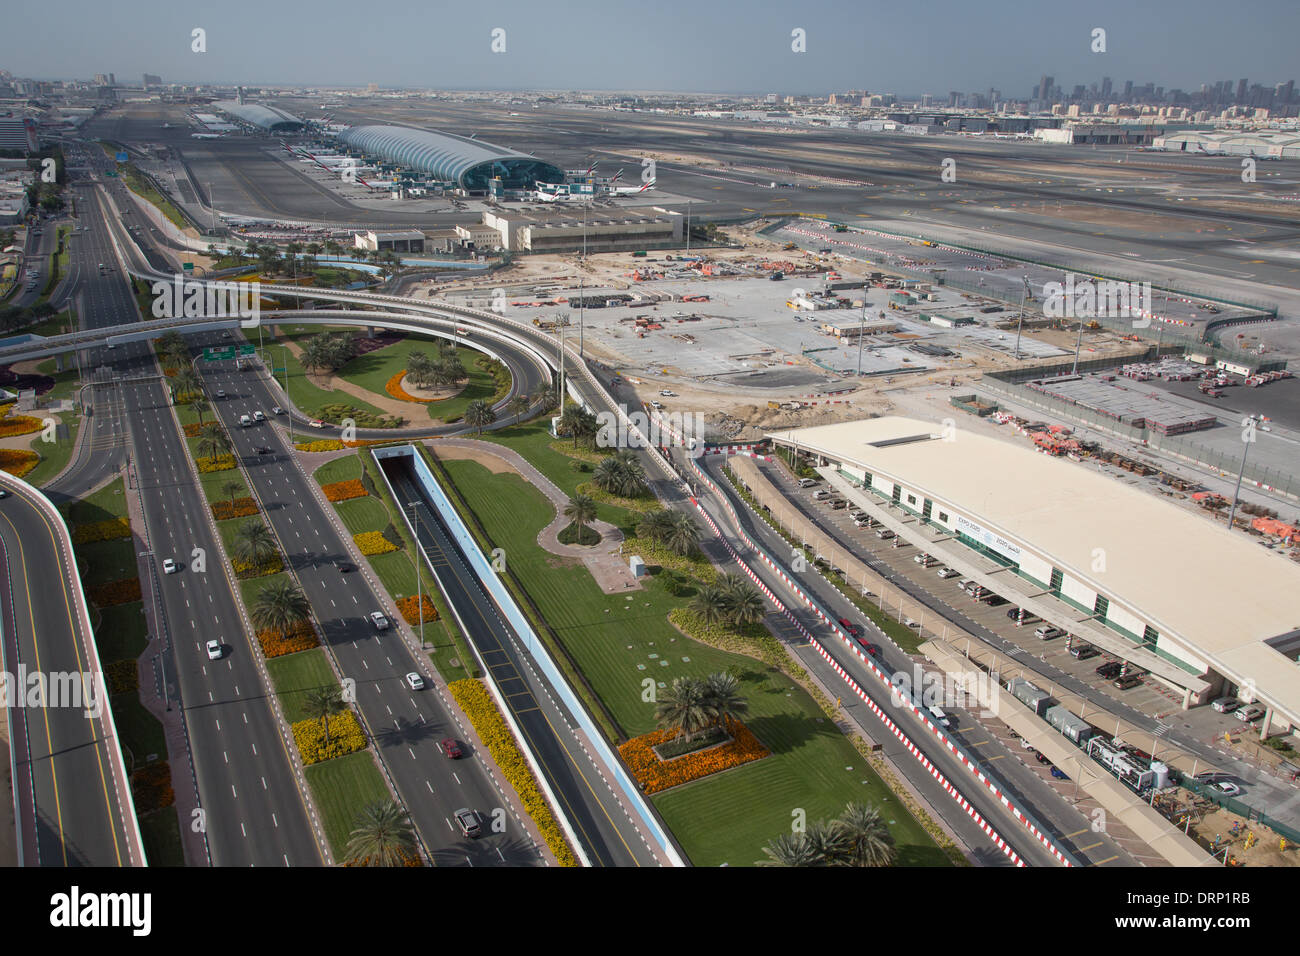 Foto aerea di Dubai negli Emirati Arabi Uniti. Aeroporto Internazionale di Dubai. Foto Stock